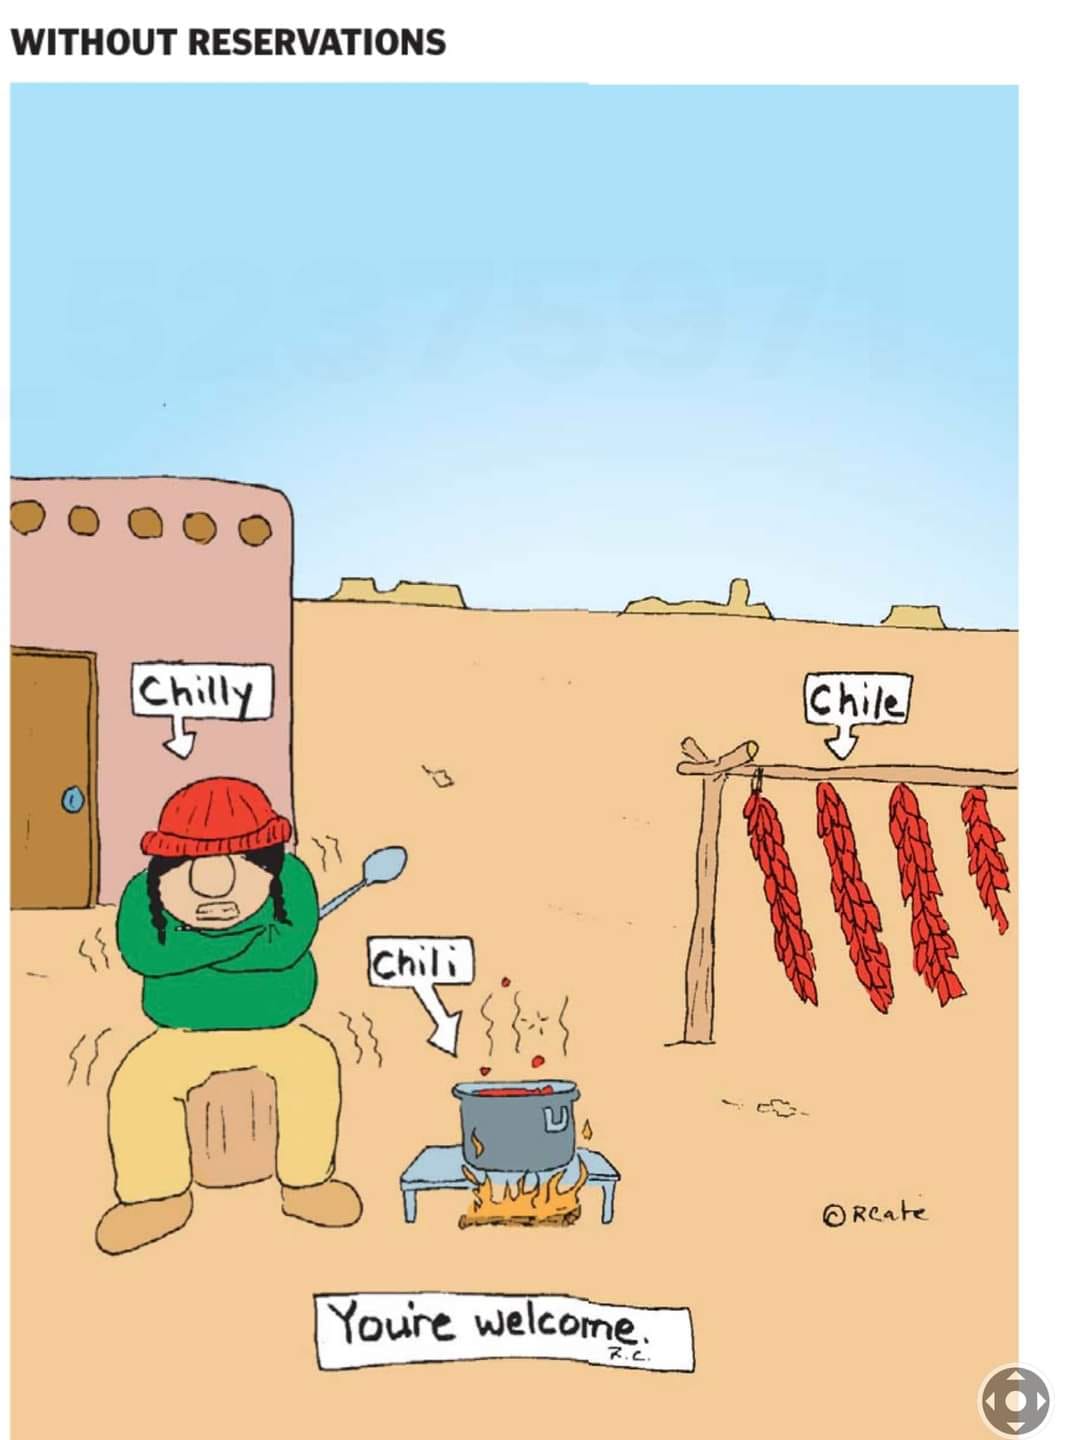 Chile vs Chili cartoon.